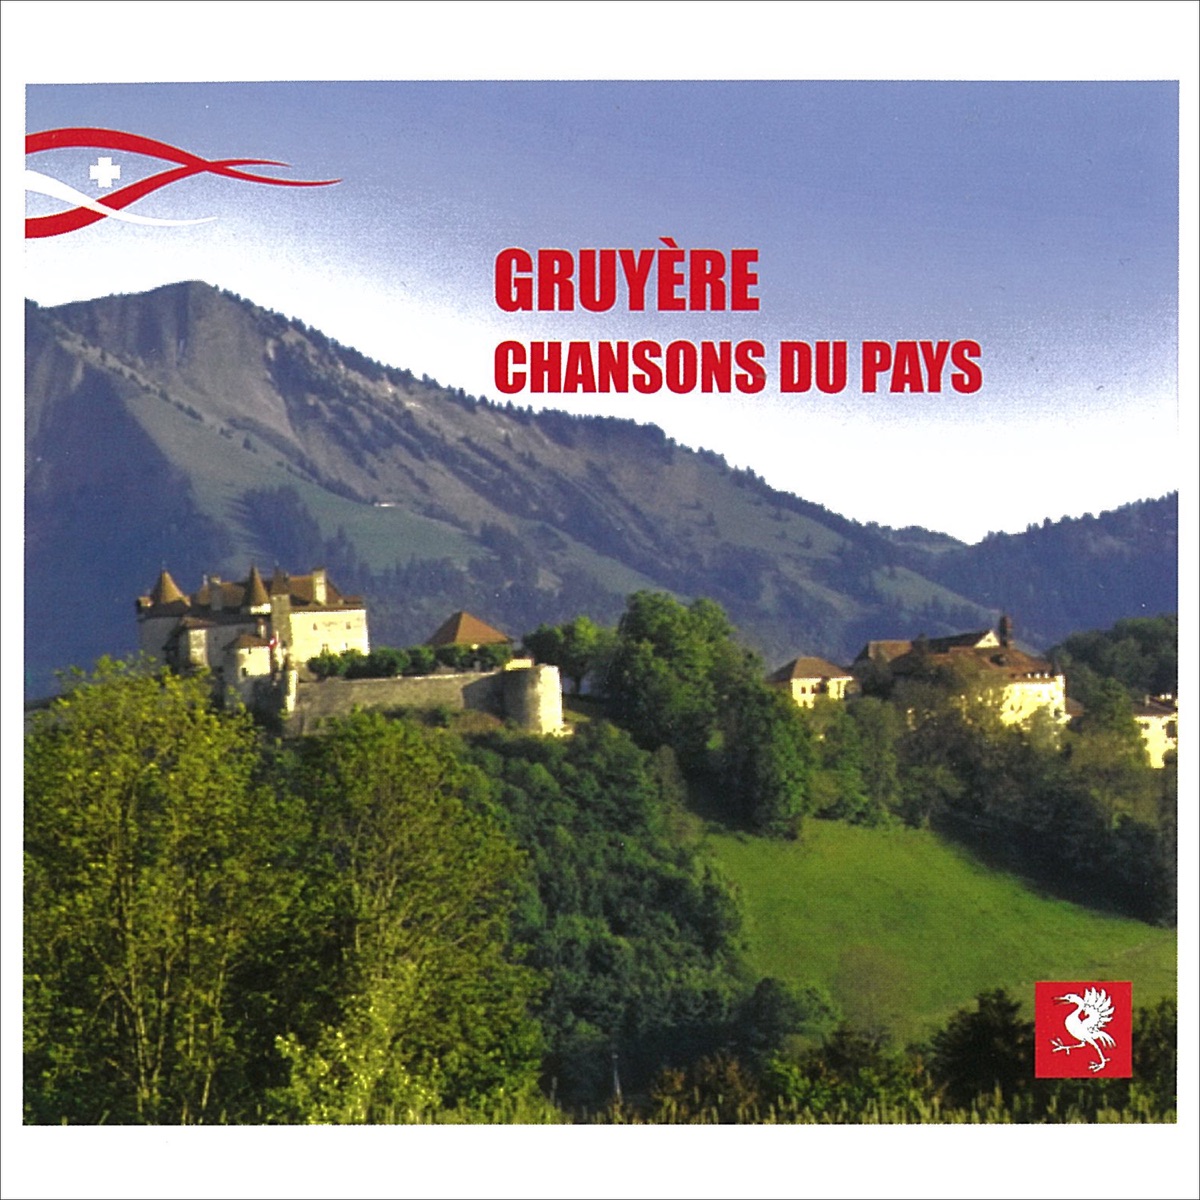 Le vieux chalet (Chants et mélodies populaires de L'Abbé Joseph Bovet) -  Album by Choeur des Armaillis de la Gruyère - Apple Music